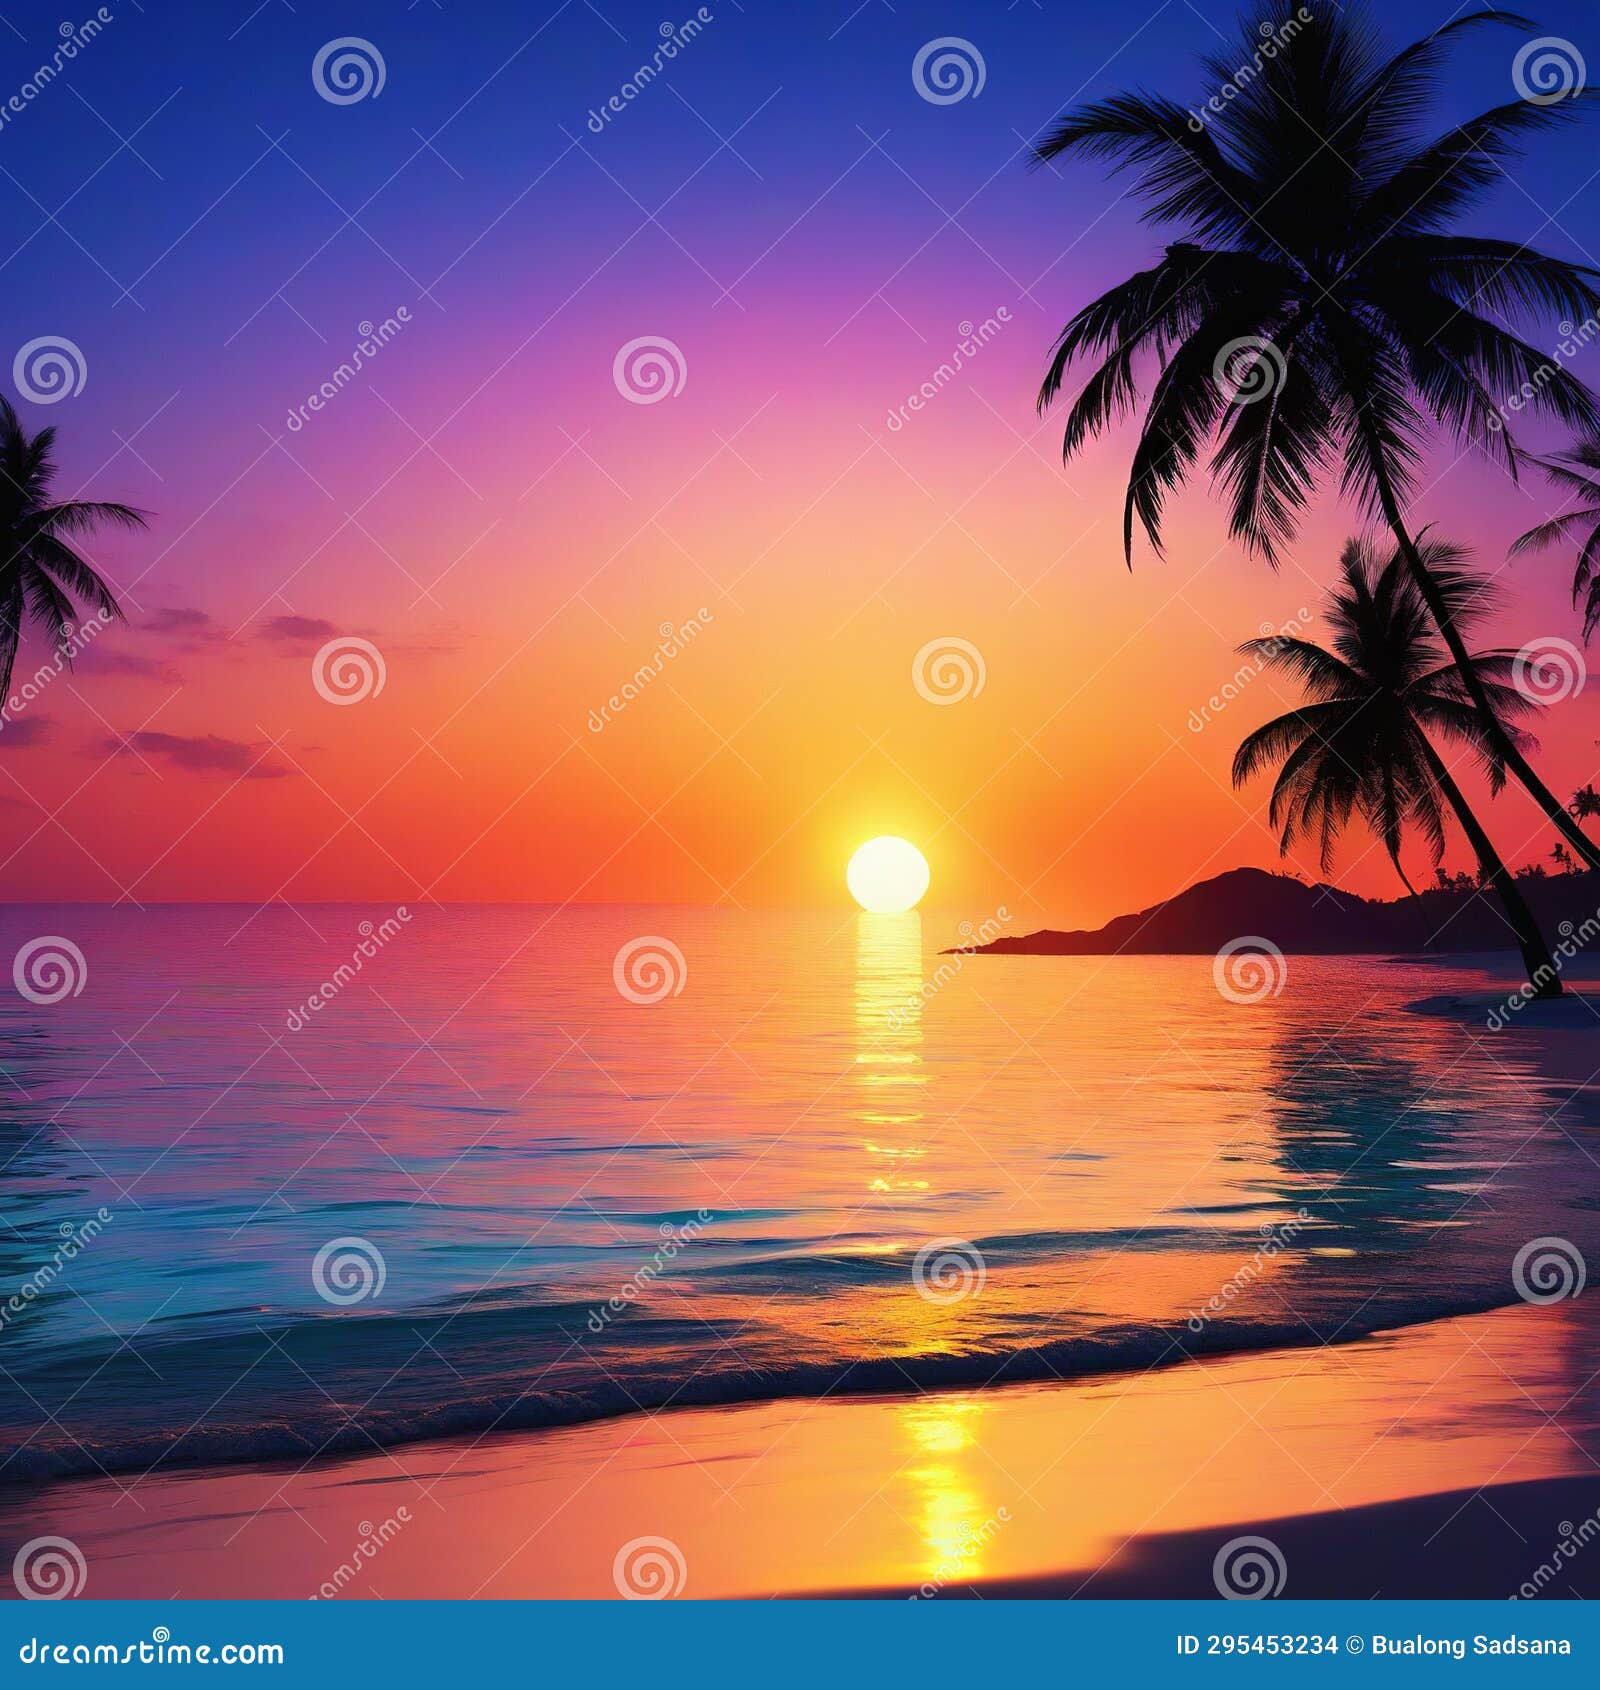 Sunset on the Beach Vice City Style Stock Illustration - Illustration ...